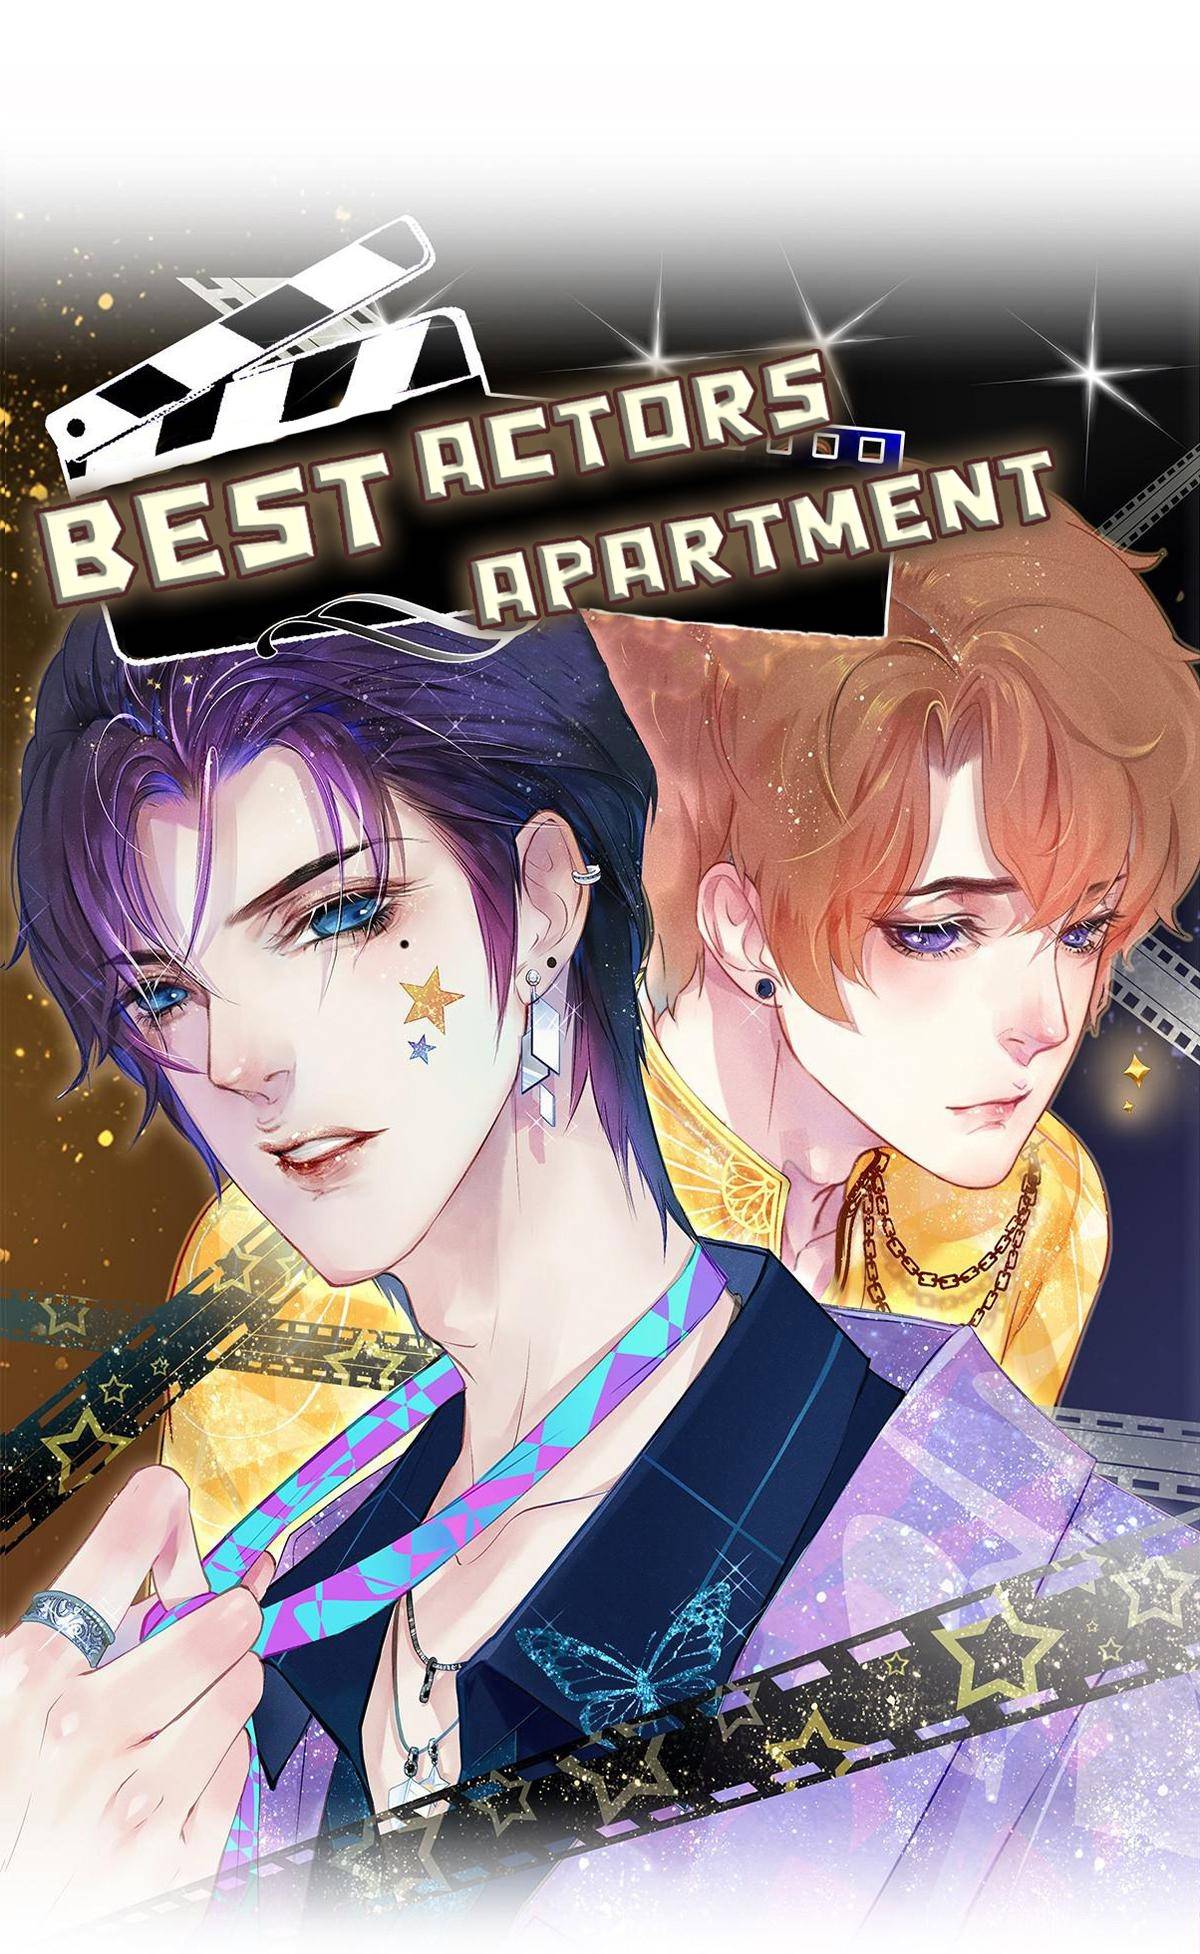 Best Actors Apartment - chapter 12 - #1